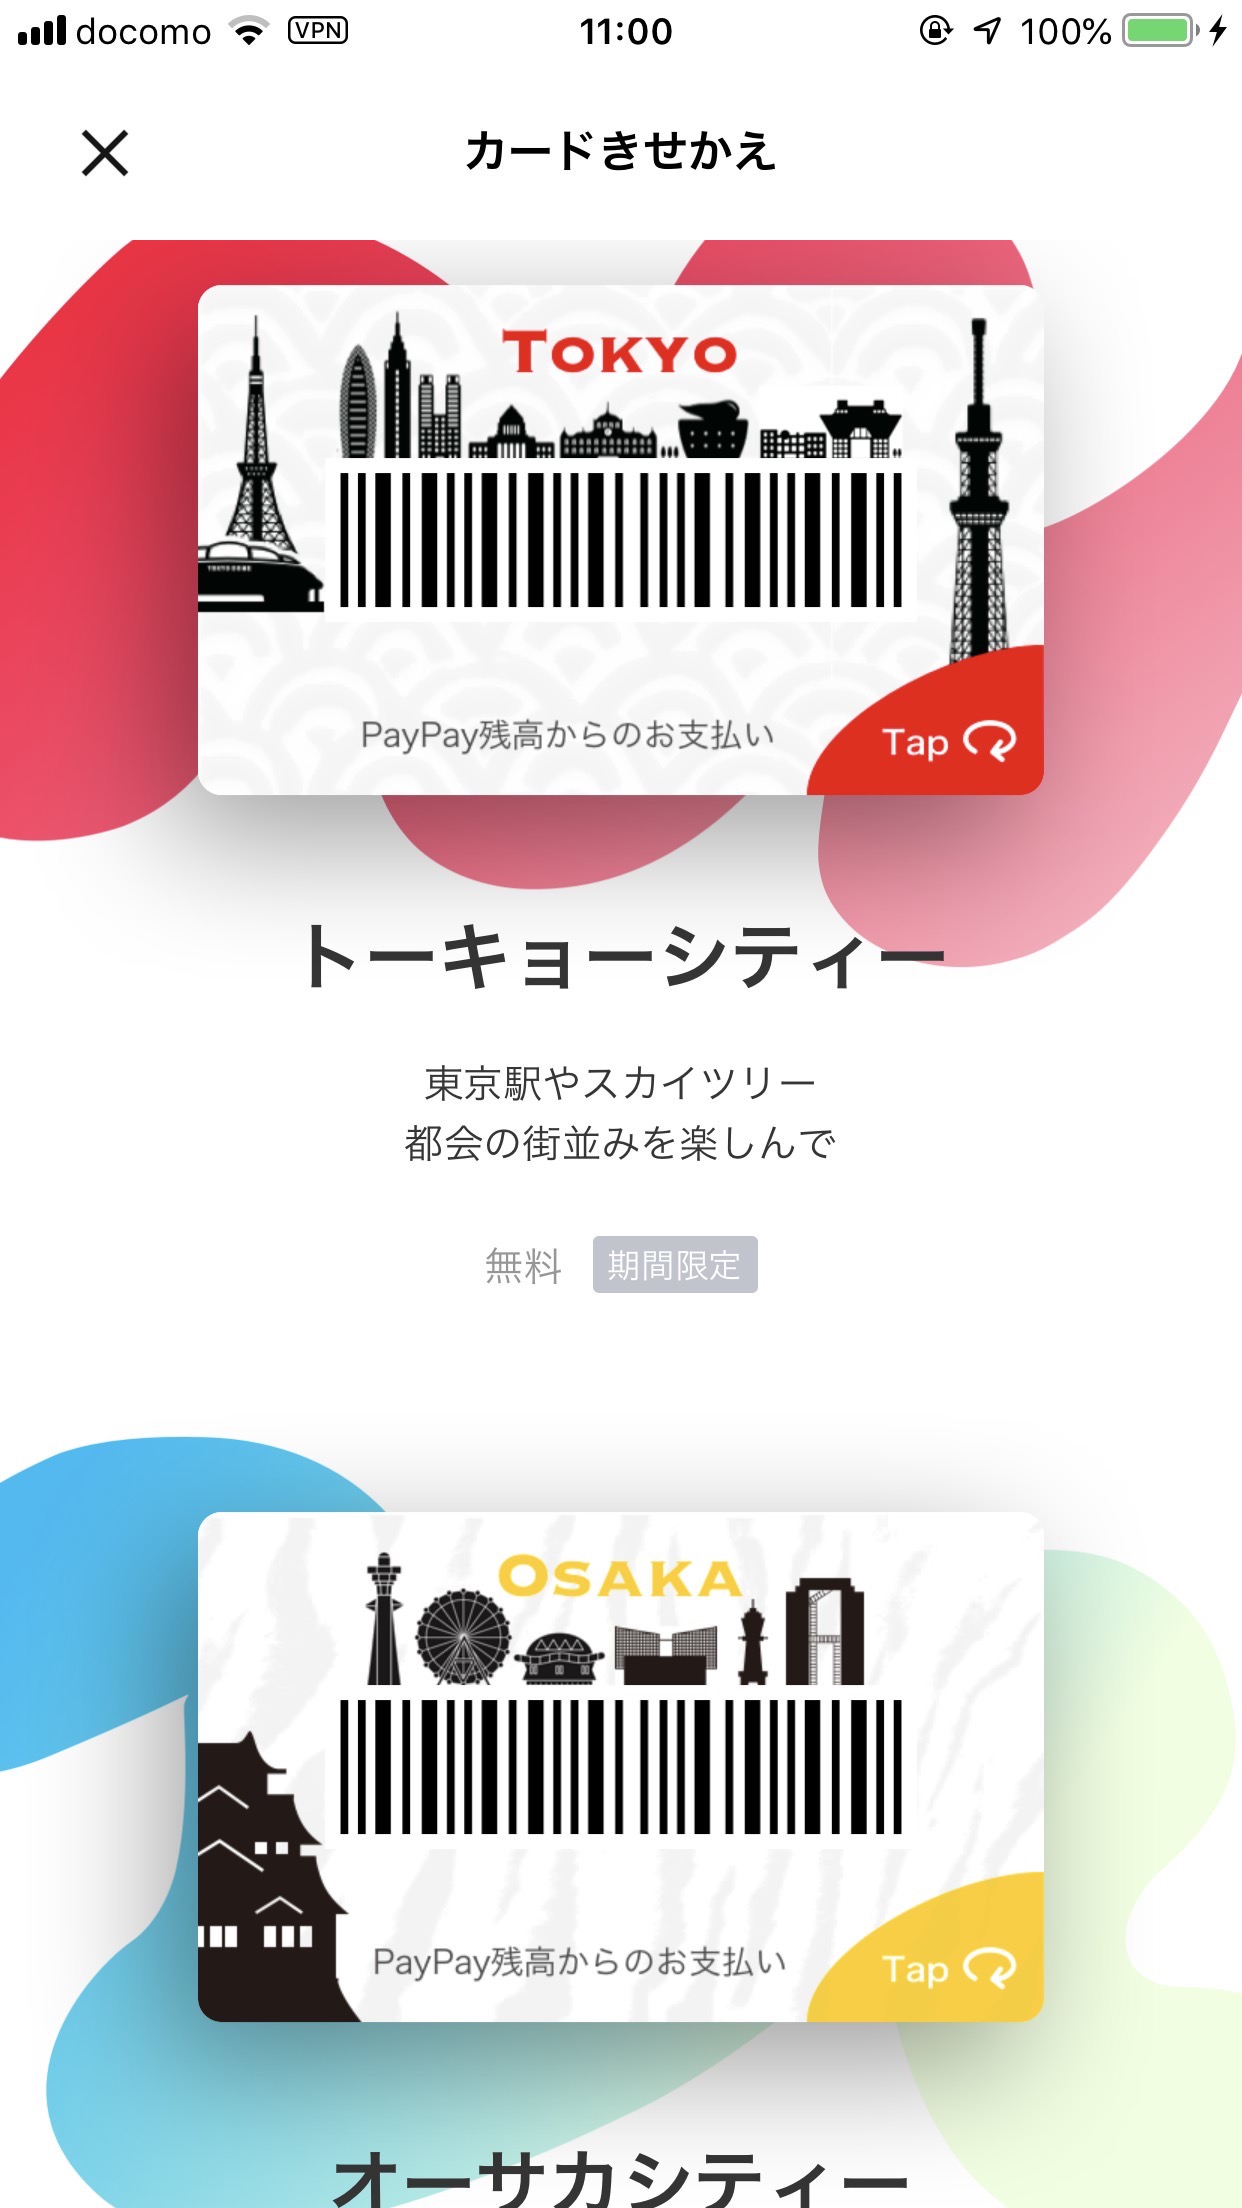 【PayPay】カードデザインを変更できる「カードきせかえ」機能を追加